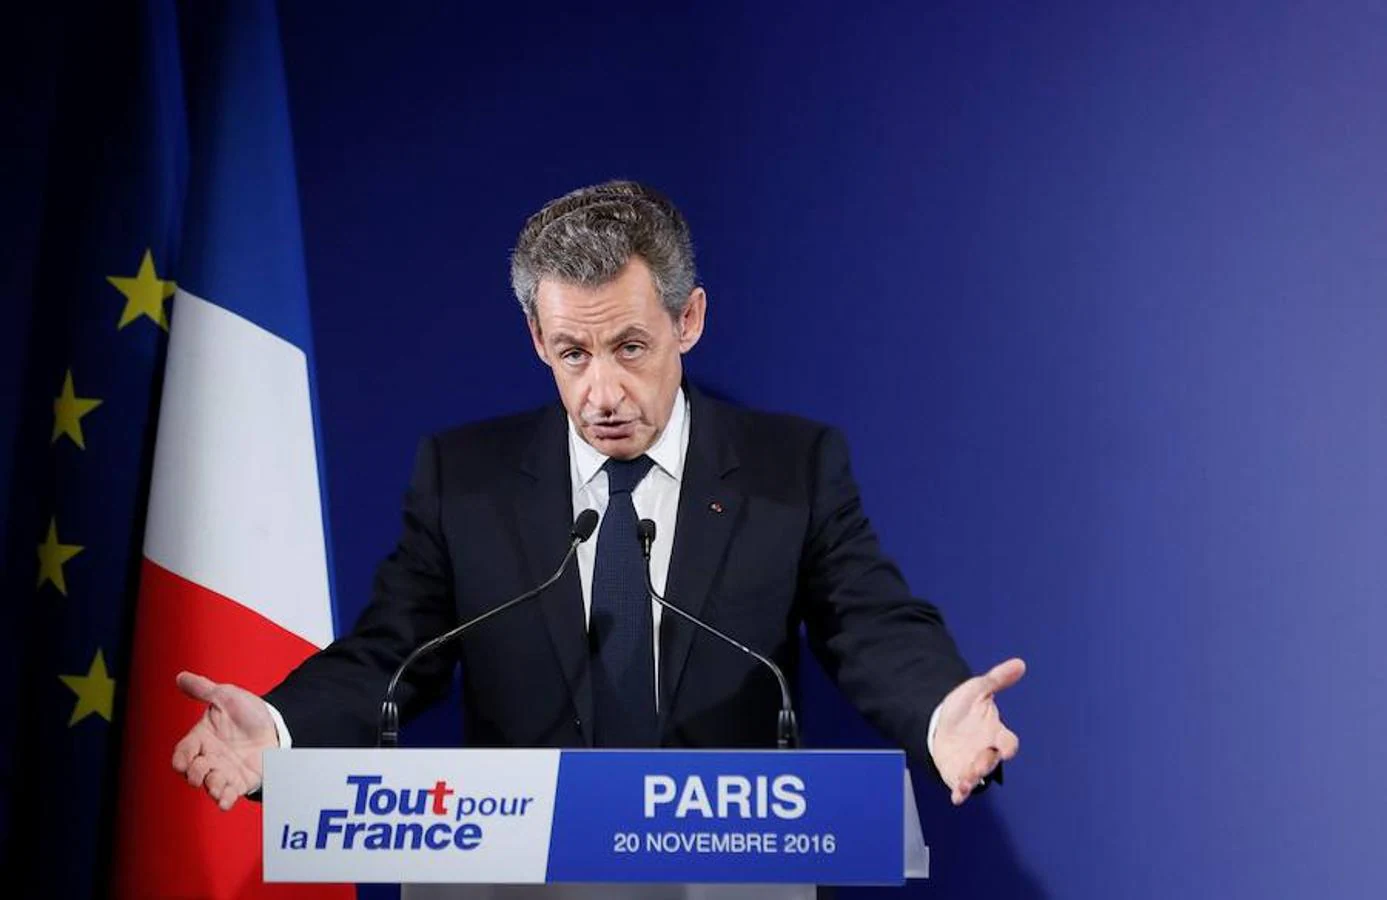 El expresidente galo Nicolas Sarkozy partía como favorito, junto con Juppé y Fillon, para liderar su formación: Los Republicanos. Sin embargo, de acuerdo con los resultados oficiales de la primera vuelta de las elecciones primarias del partido, ha obtenido menos de un 23 % de los votos frente al 43 % de Fillon y el 26,7 % de Juppé.